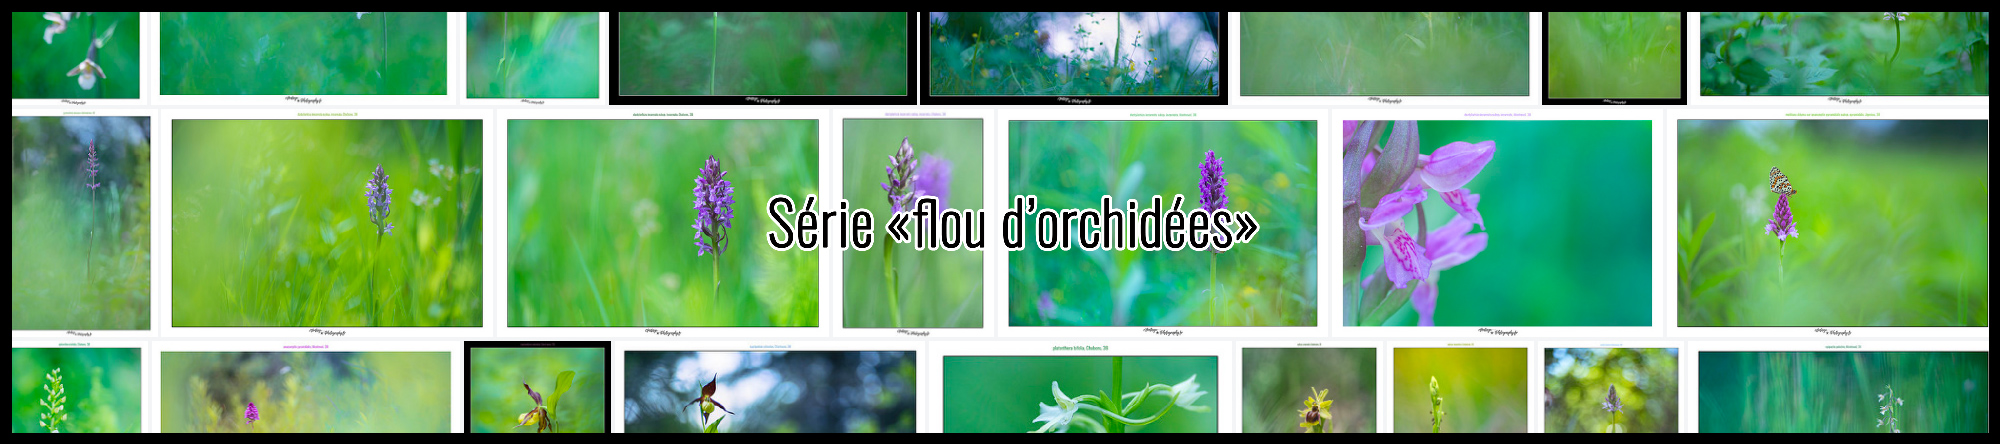 Série photos d'orchidées par Yann Dubois - MusashiChan